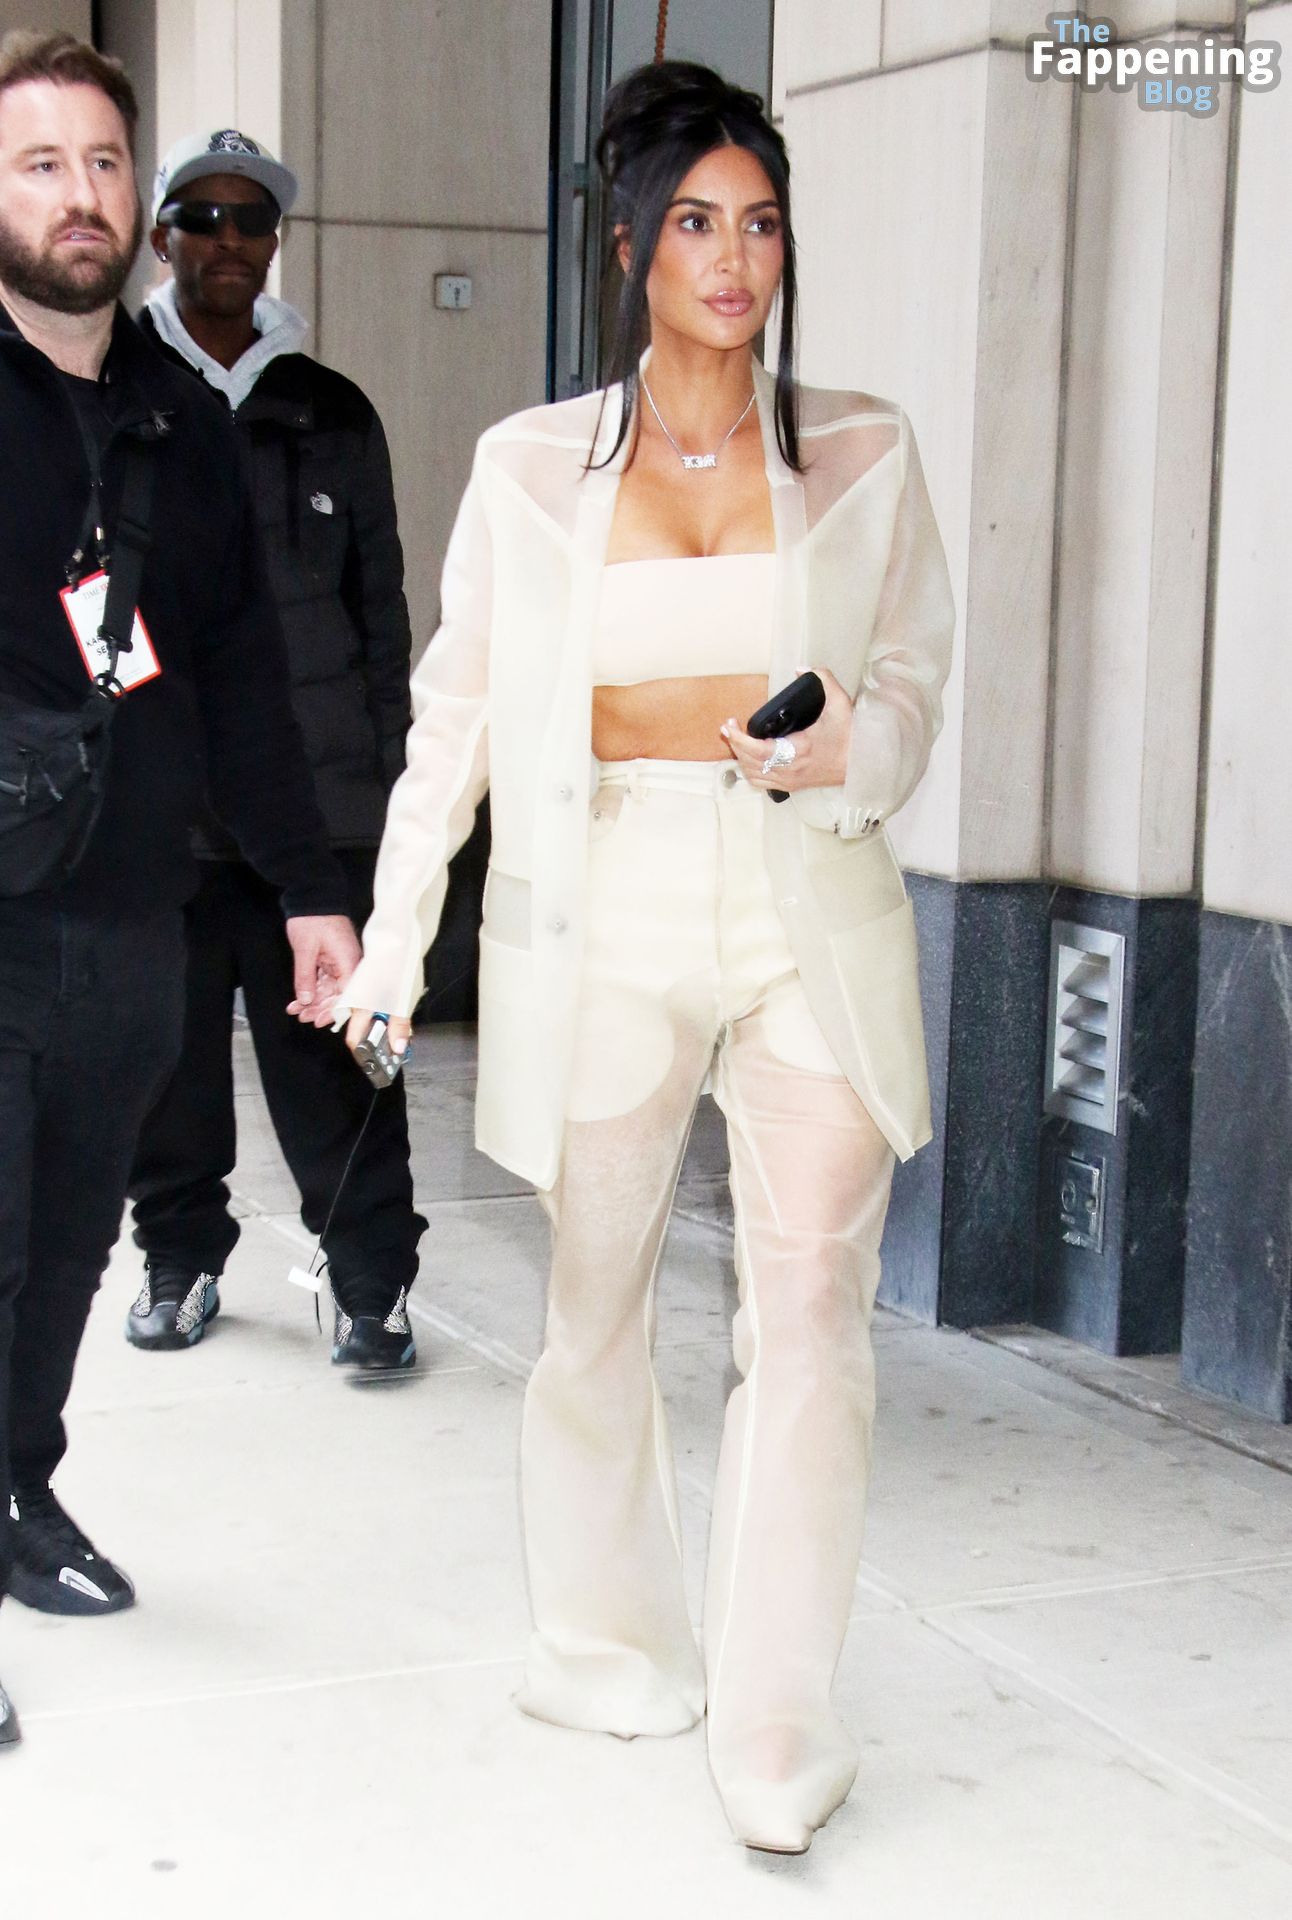 Kim-Kardashian-Sexy-The-Fappening-Blog-119.jpg